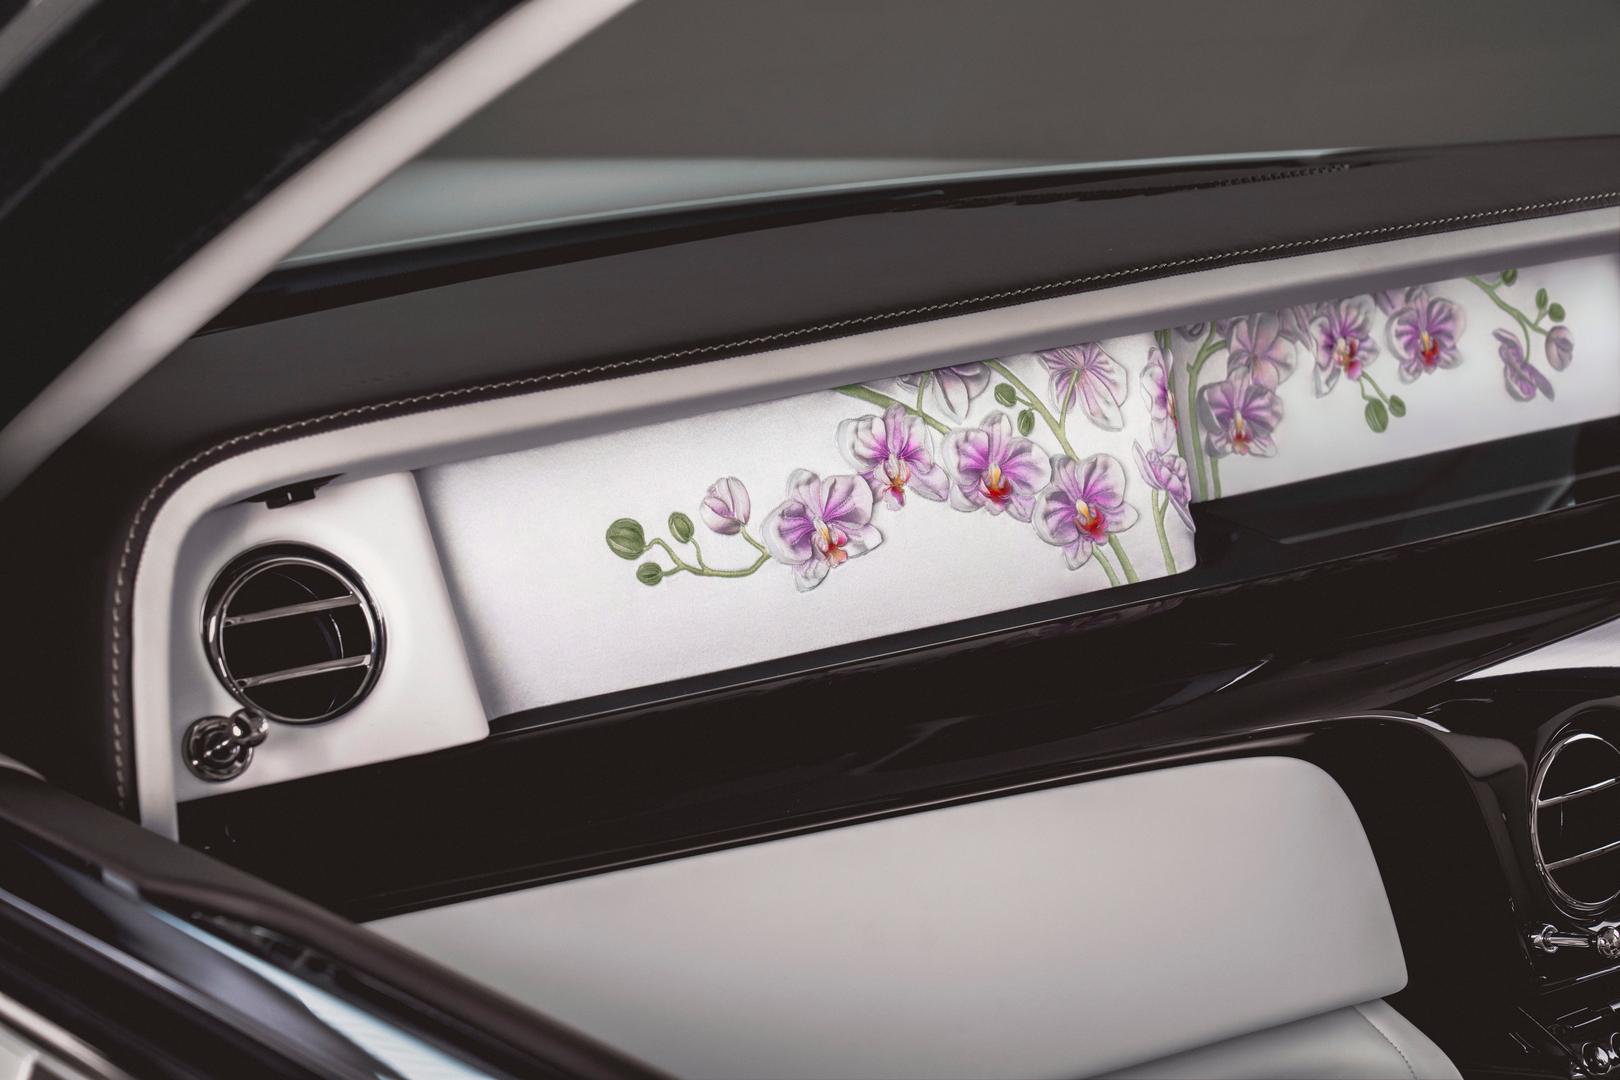 Rolls-Royce Phantom Orchid interior